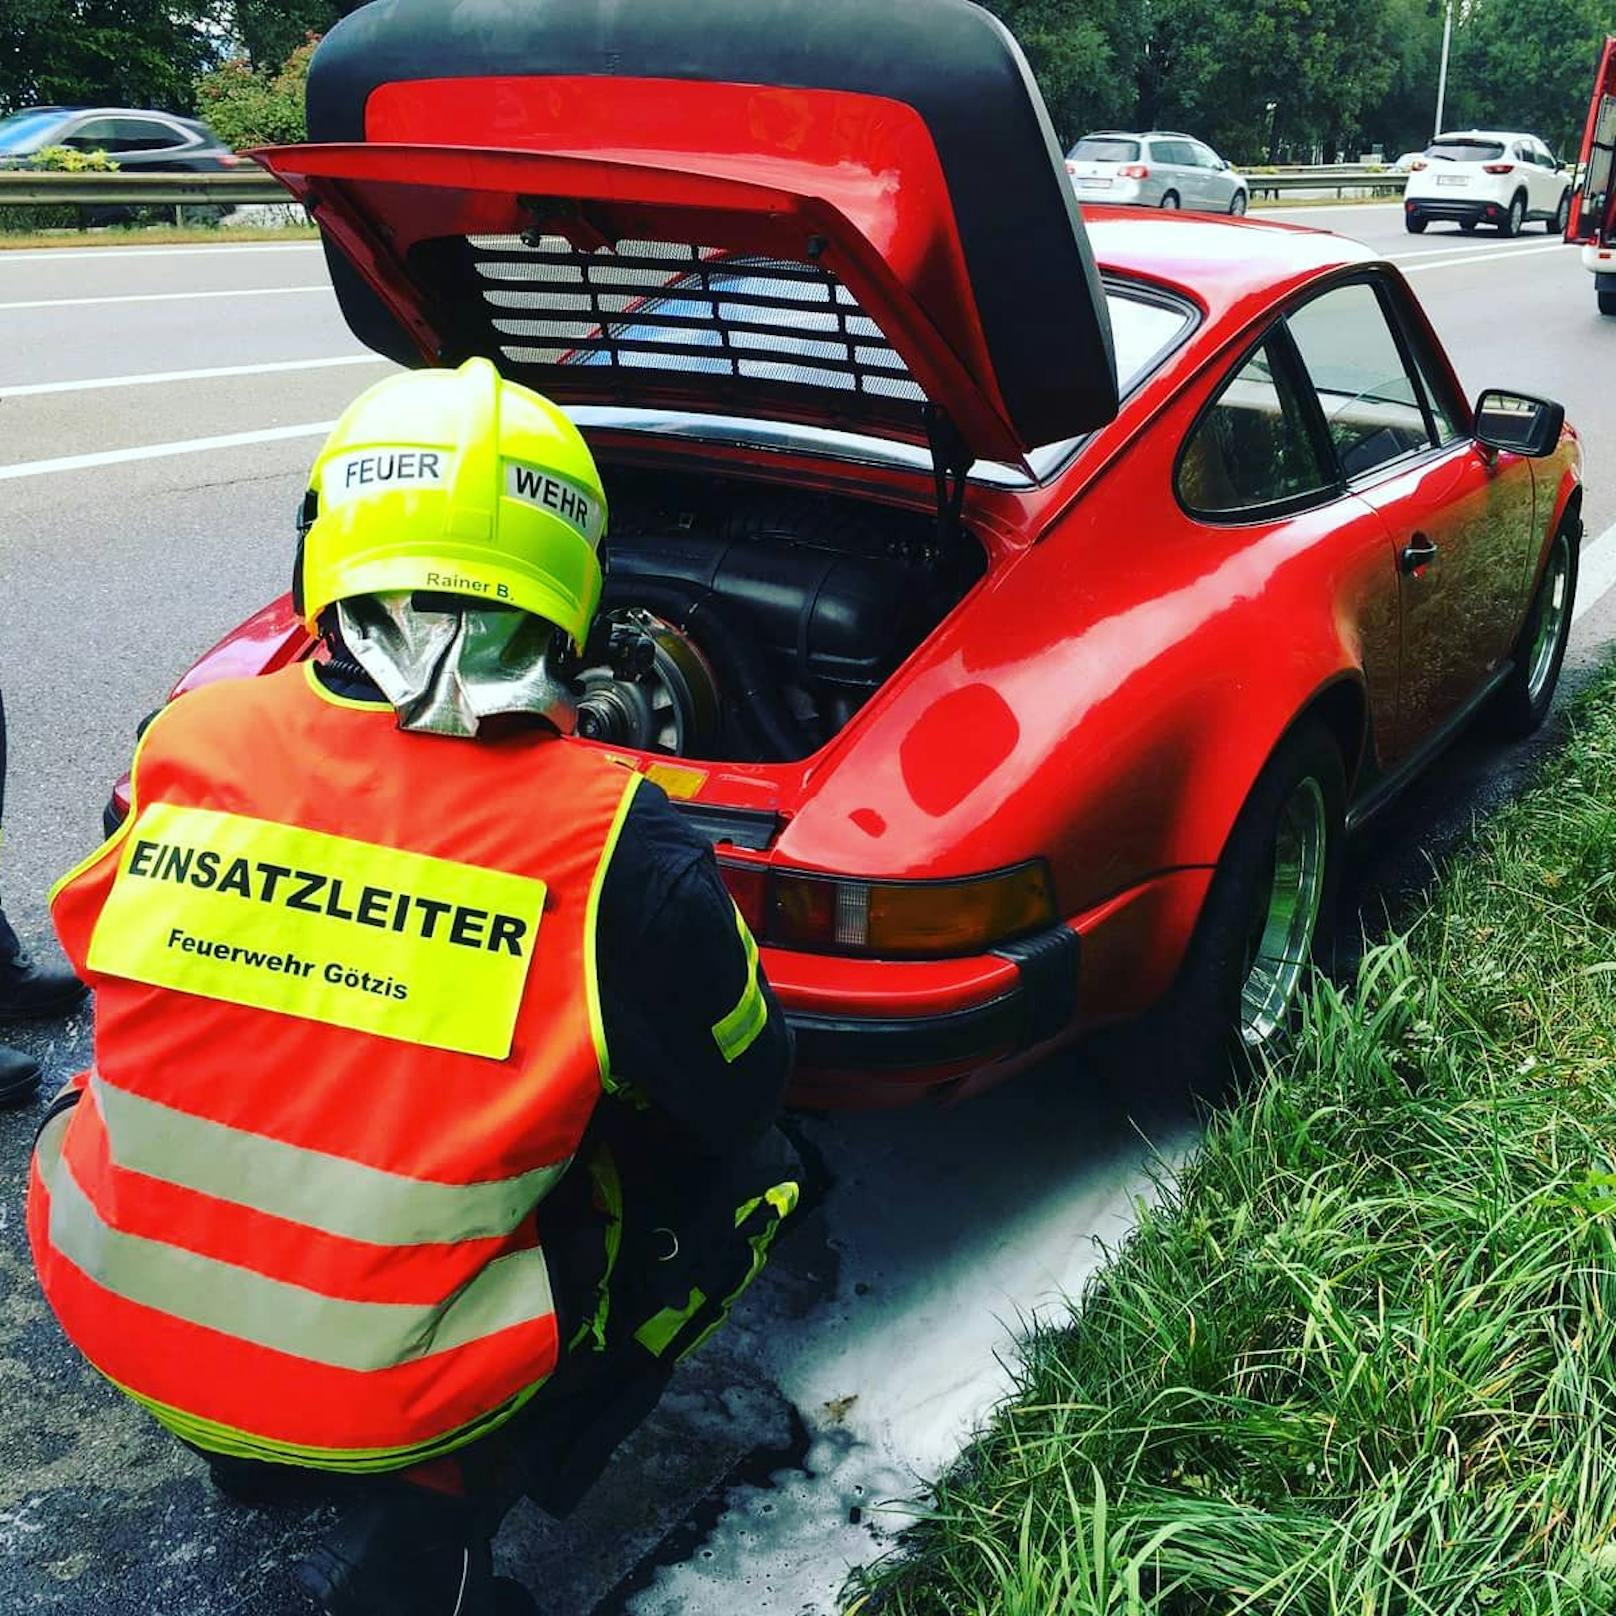 Aus dem Porsche eines 70-Jährigen schlugen Flammen.